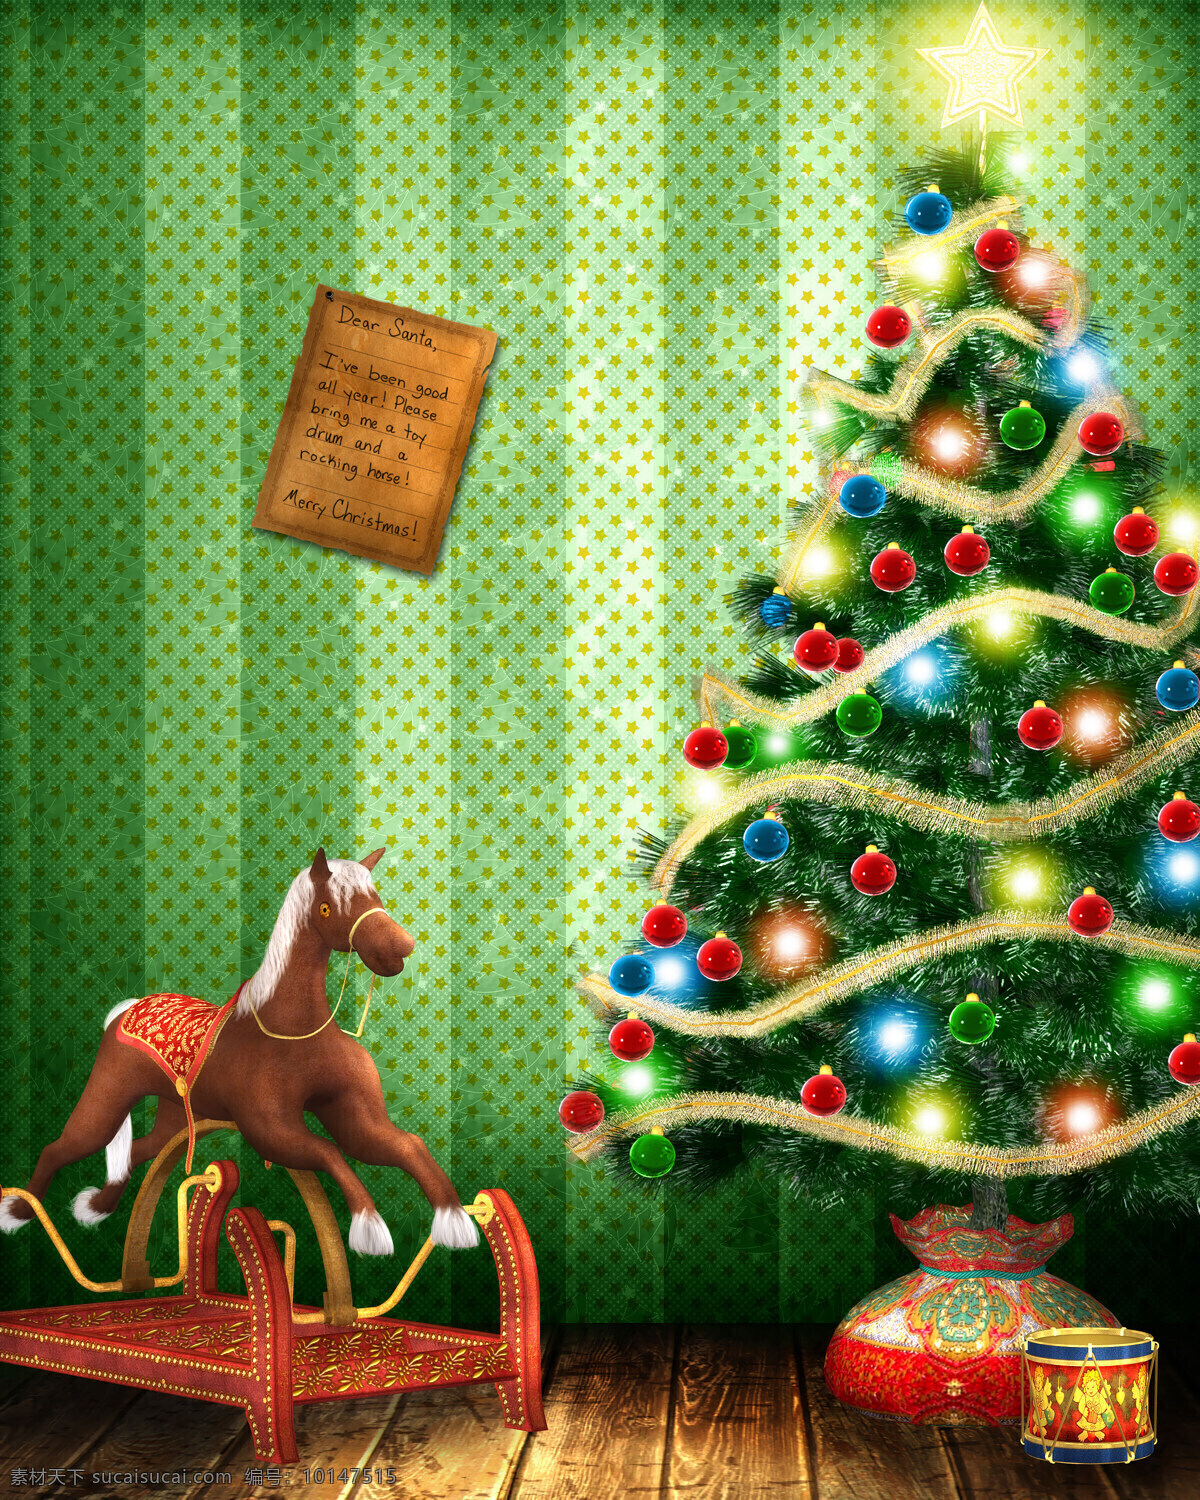 甜蜜 圣诞节 节日 圣诞节快乐 梦幻 唯美 甜蜜圣诞节 圣诞树 霓虹灯 木马 圣诞礼物 圣诞节图片 生活百科